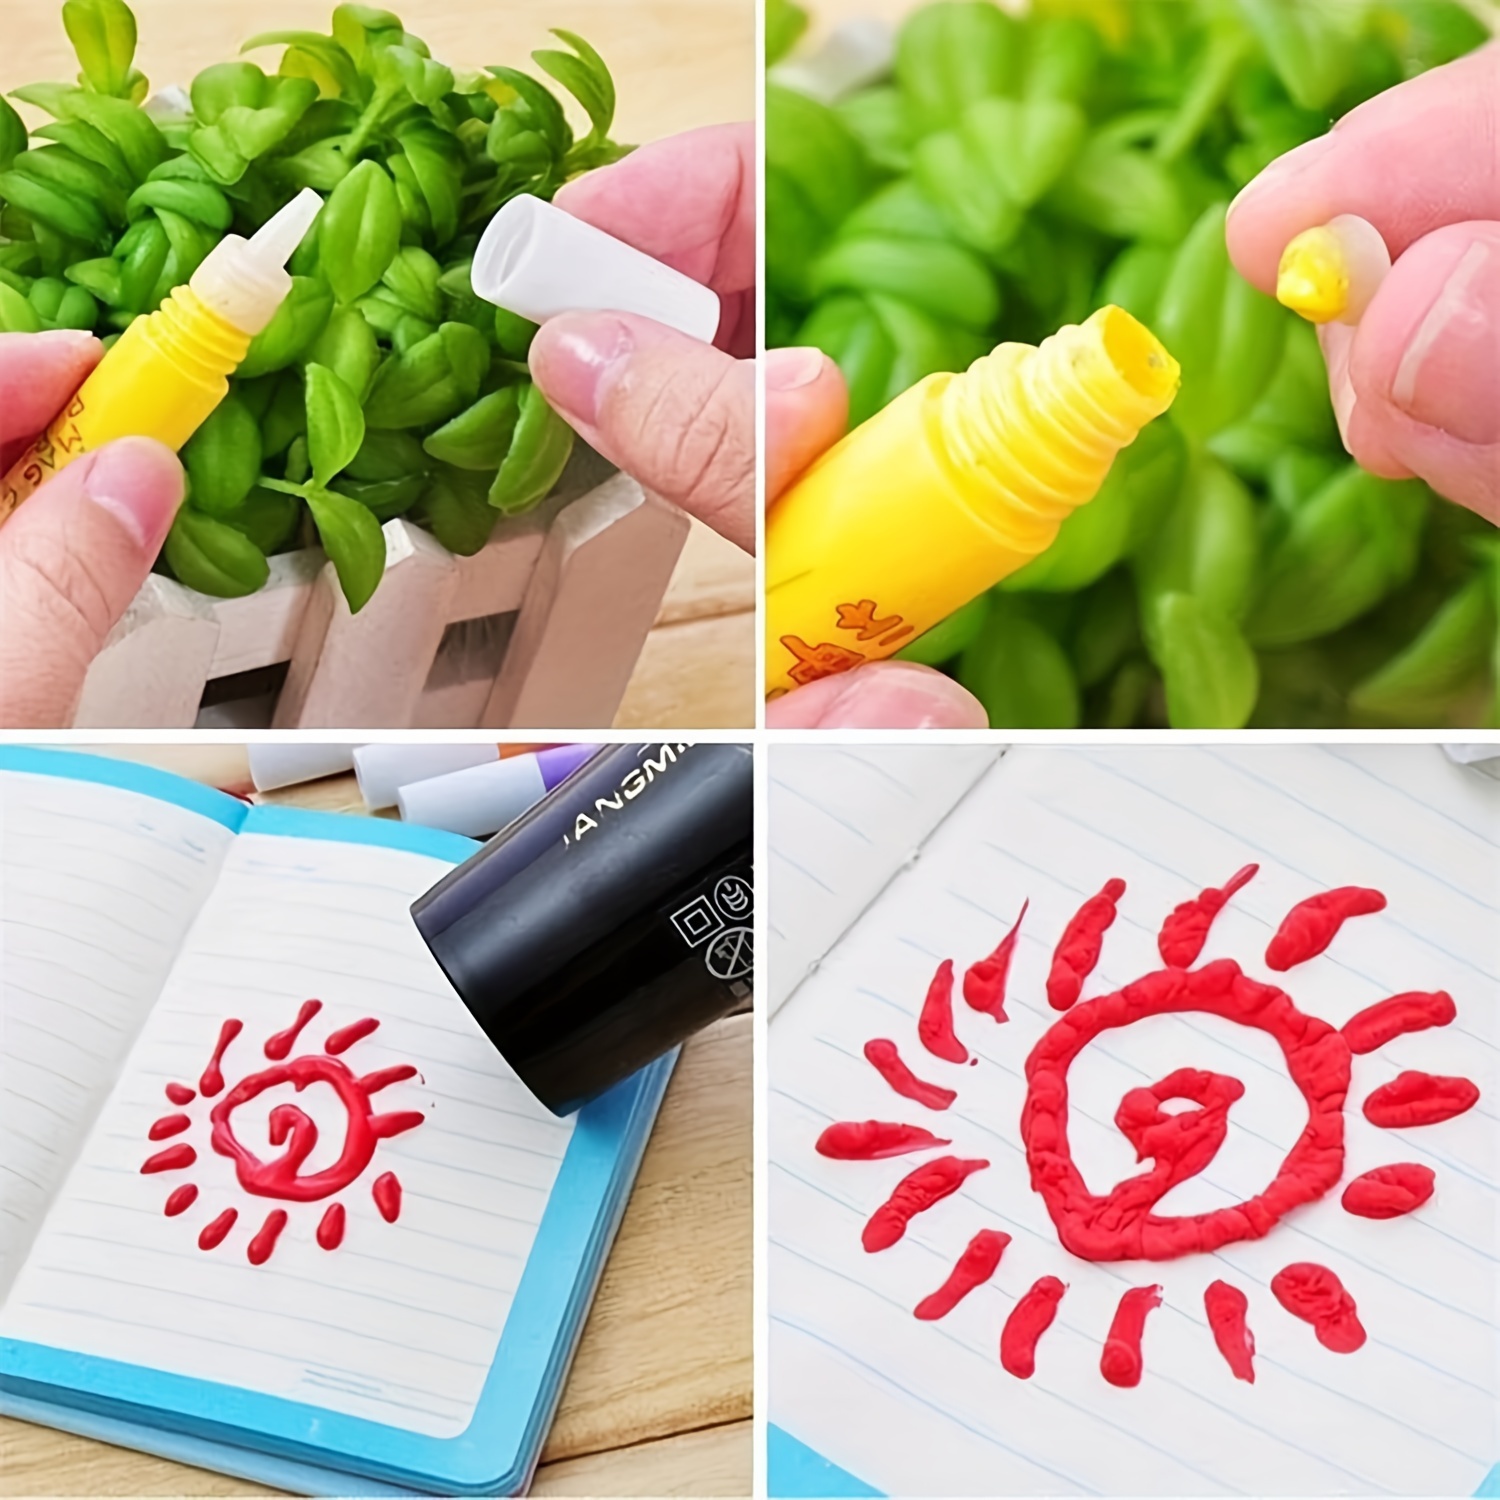 Magic Puffy Pens Popcorn Color Paint Pen Print Bubble Pen Puffy 3D